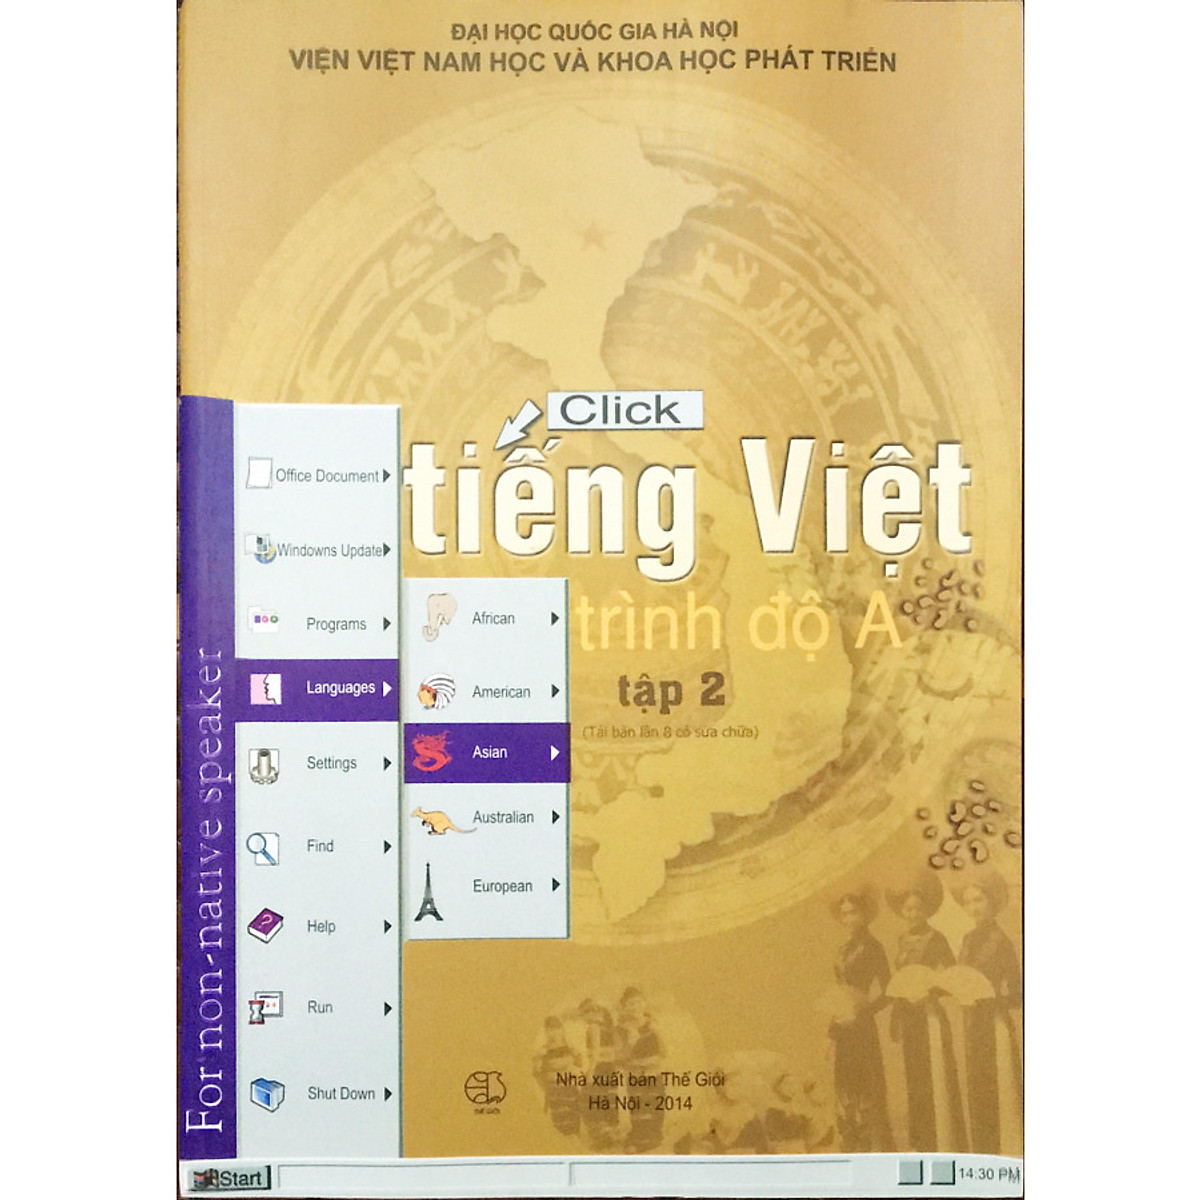 Click Tiếng Việt trình độ A T2 + 1 bookmark